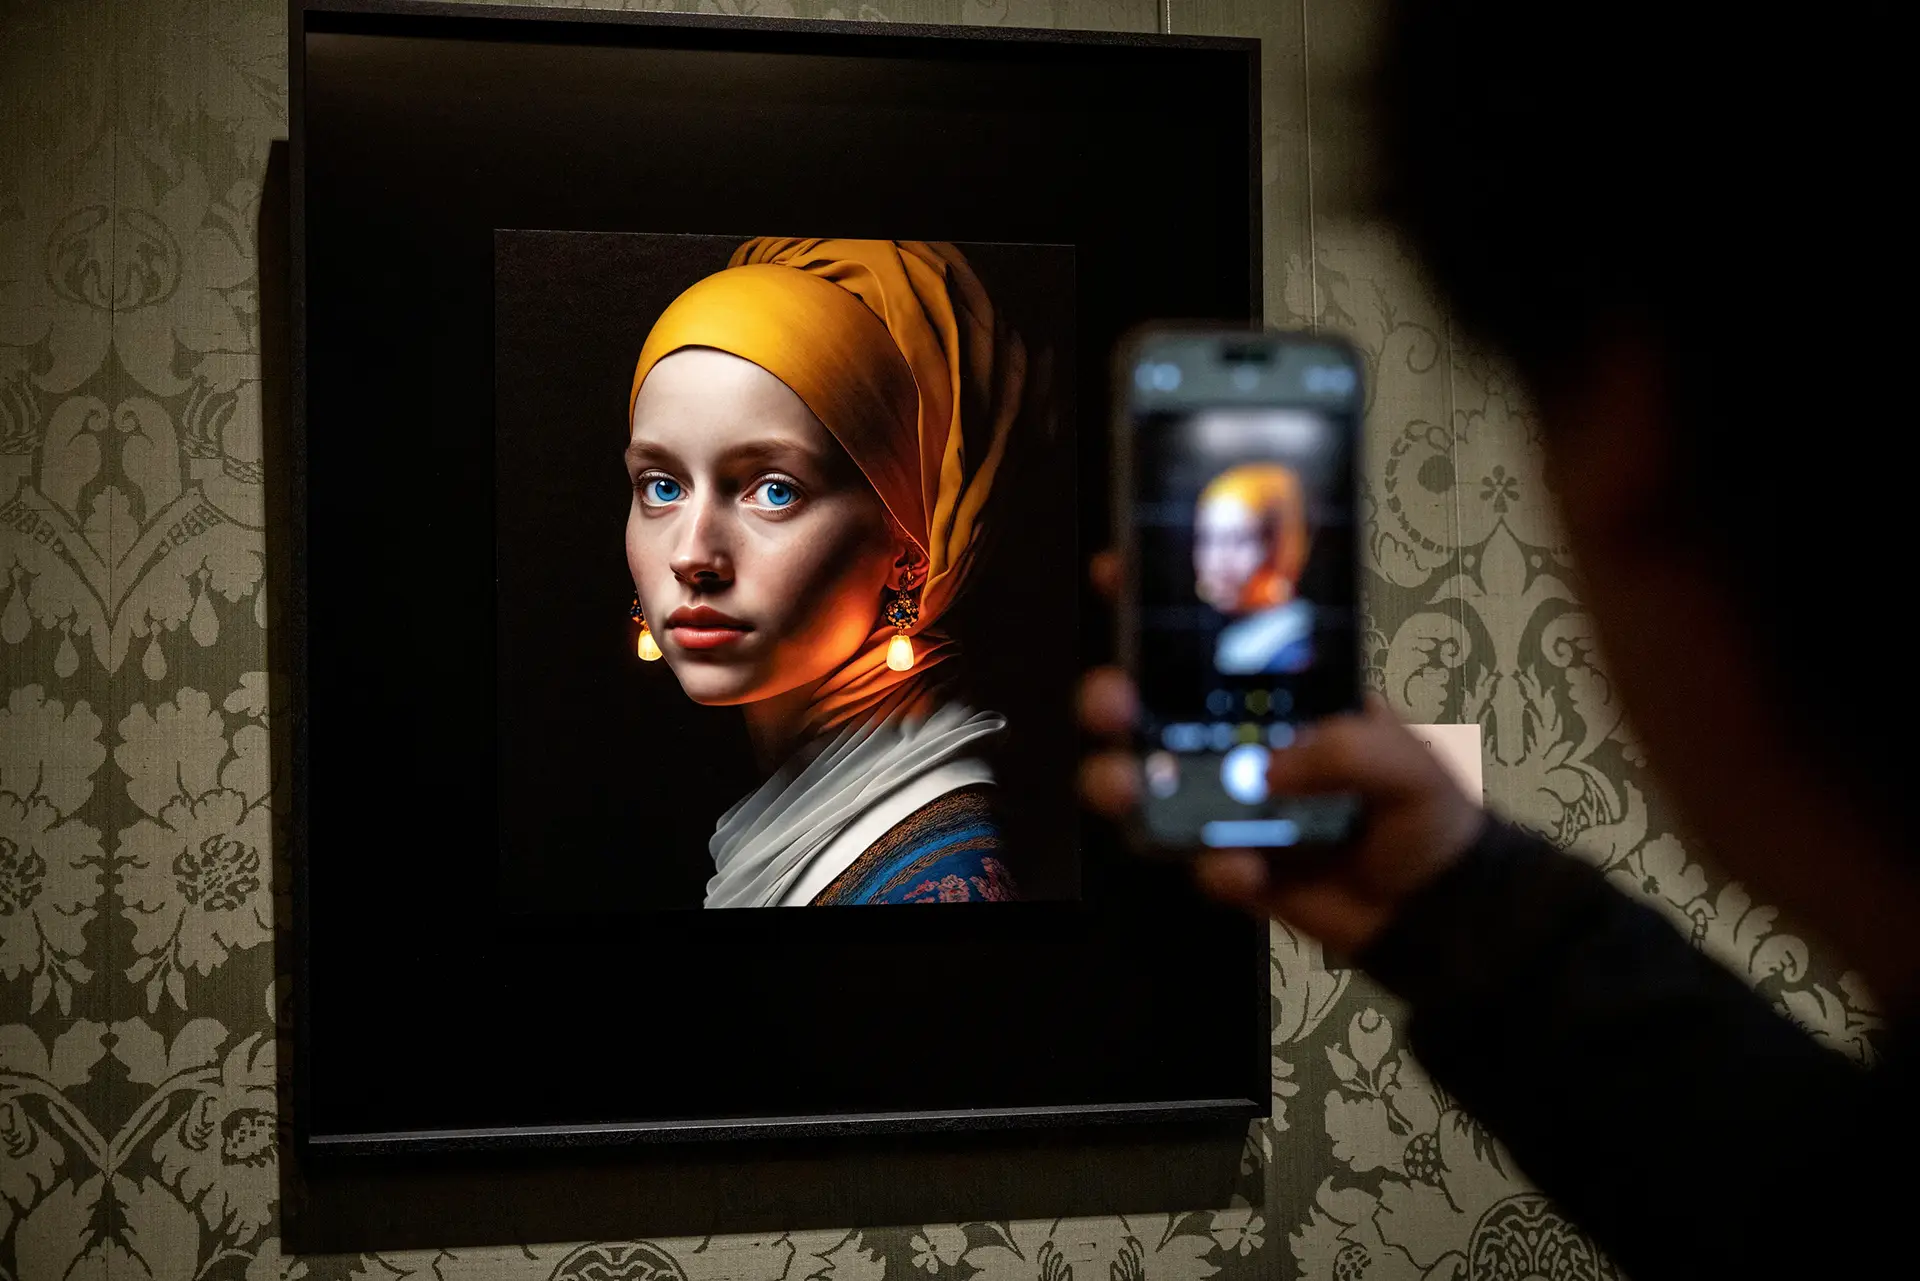 Diferença O alemão Julian van Dieken criou uma versão de “A Rapariga do Brinco de Pérola”, de Johannes Vermeer, com recurso a uma ferramenta de inteligência artificial